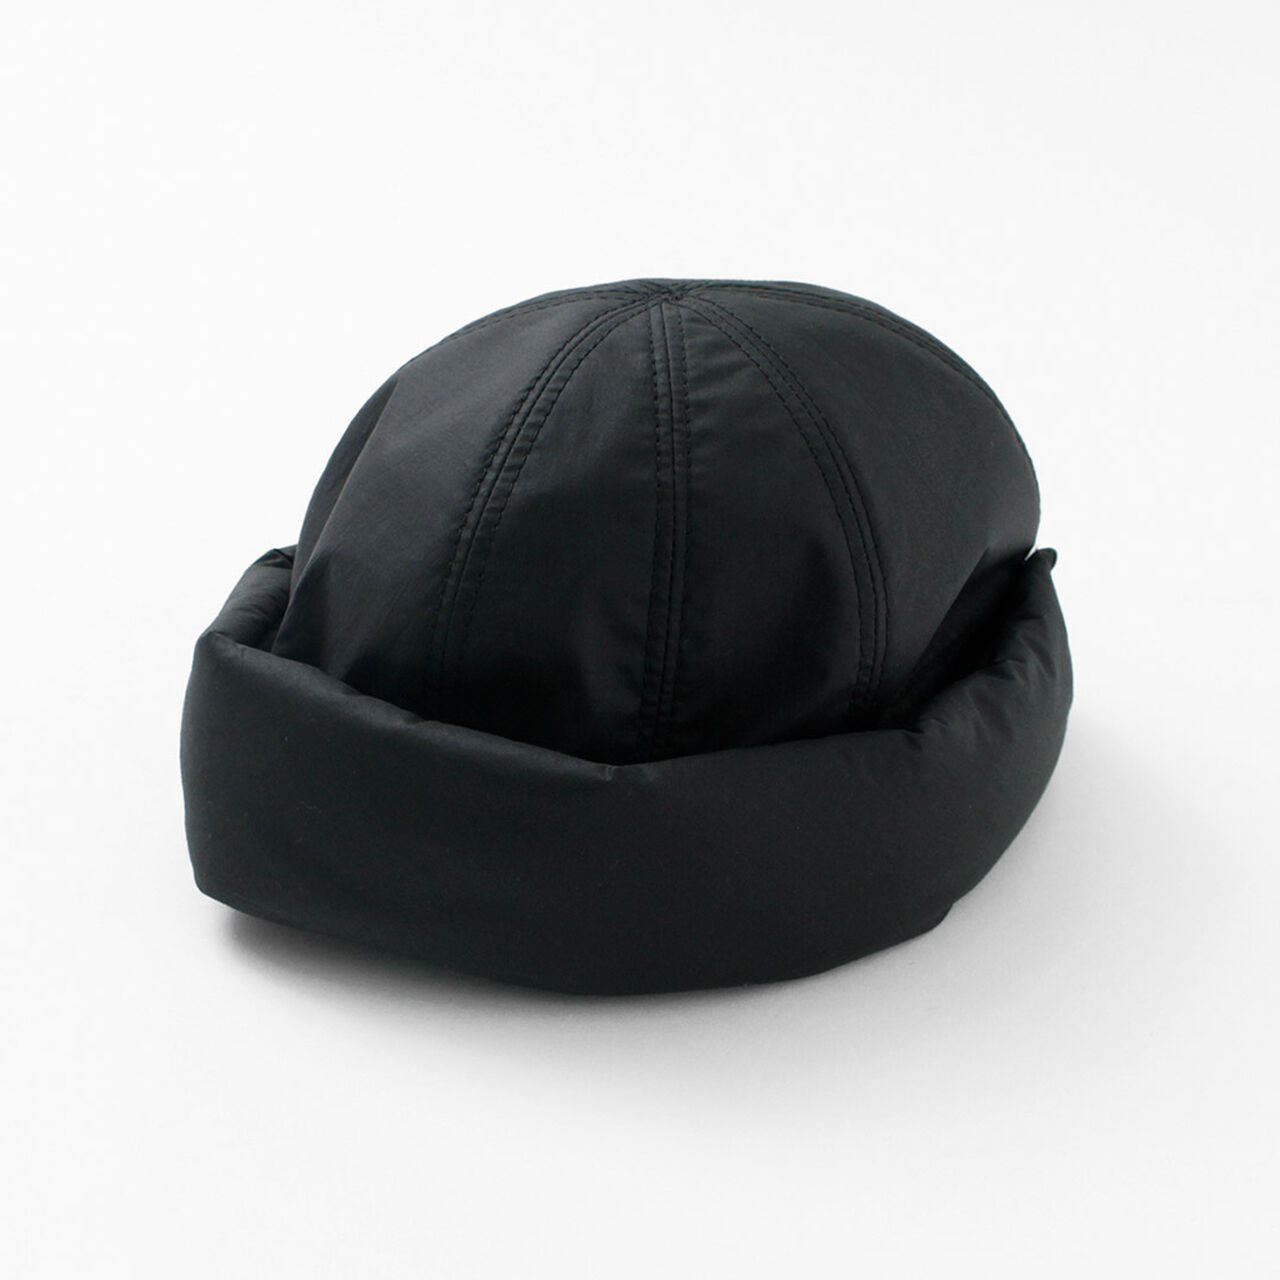 Random Roll Hat,Black, large image number 0